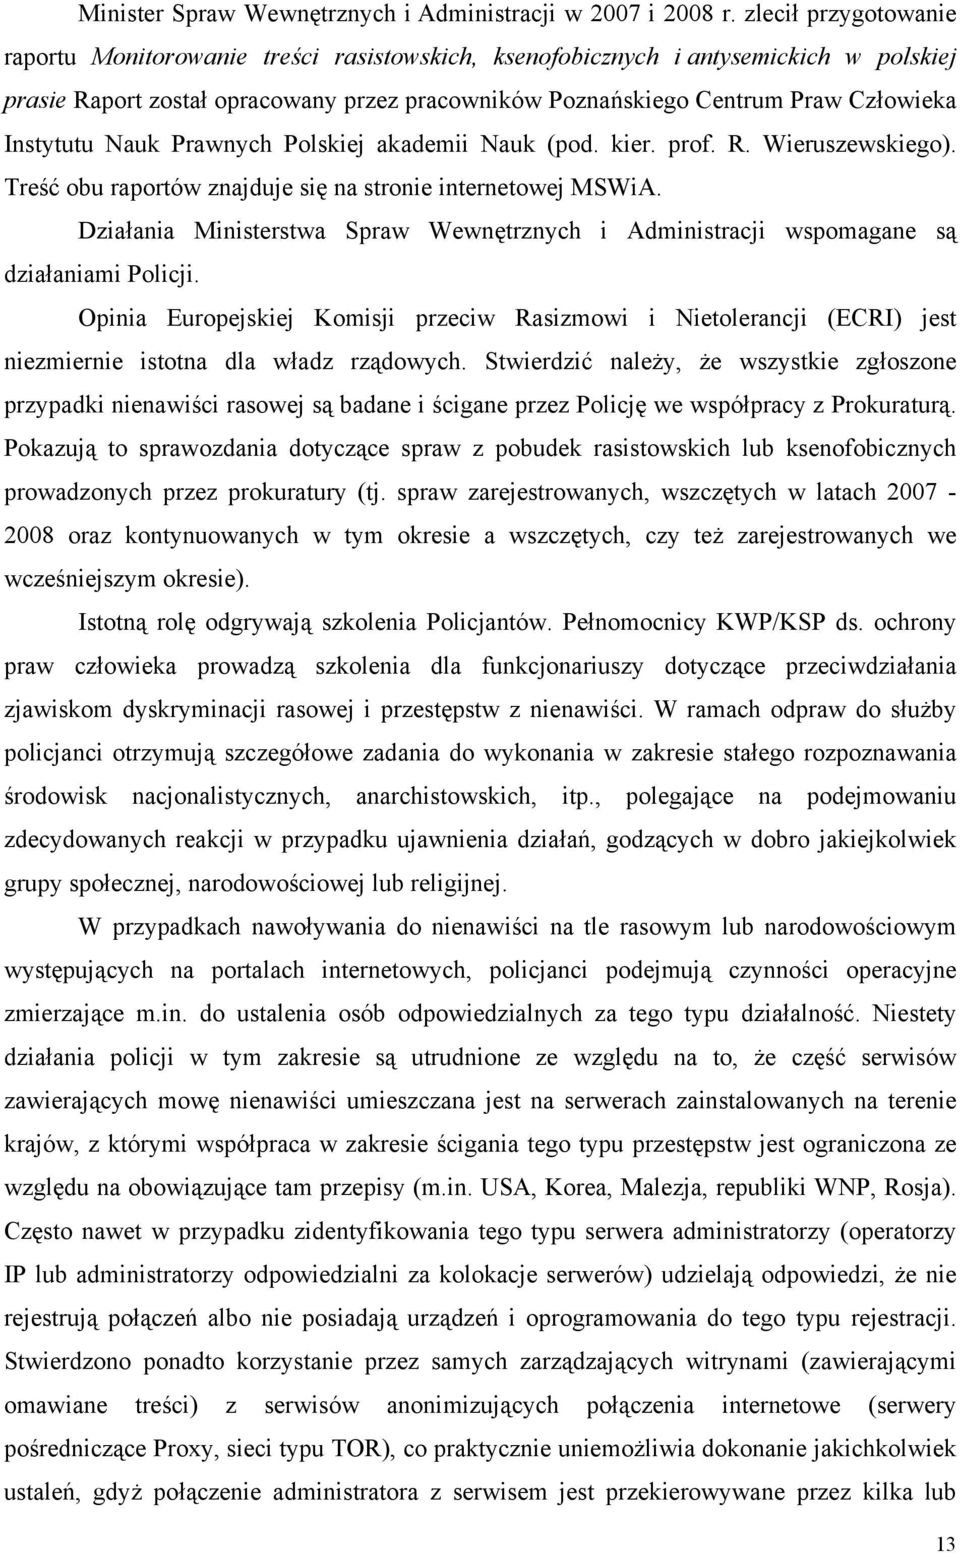 Instytutu Nauk Prawnych Polskiej akademii Nauk (pod. kier. prof. R. Wieruszewskiego). Treść obu raportów znajduje się na stronie internetowej MSWiA.